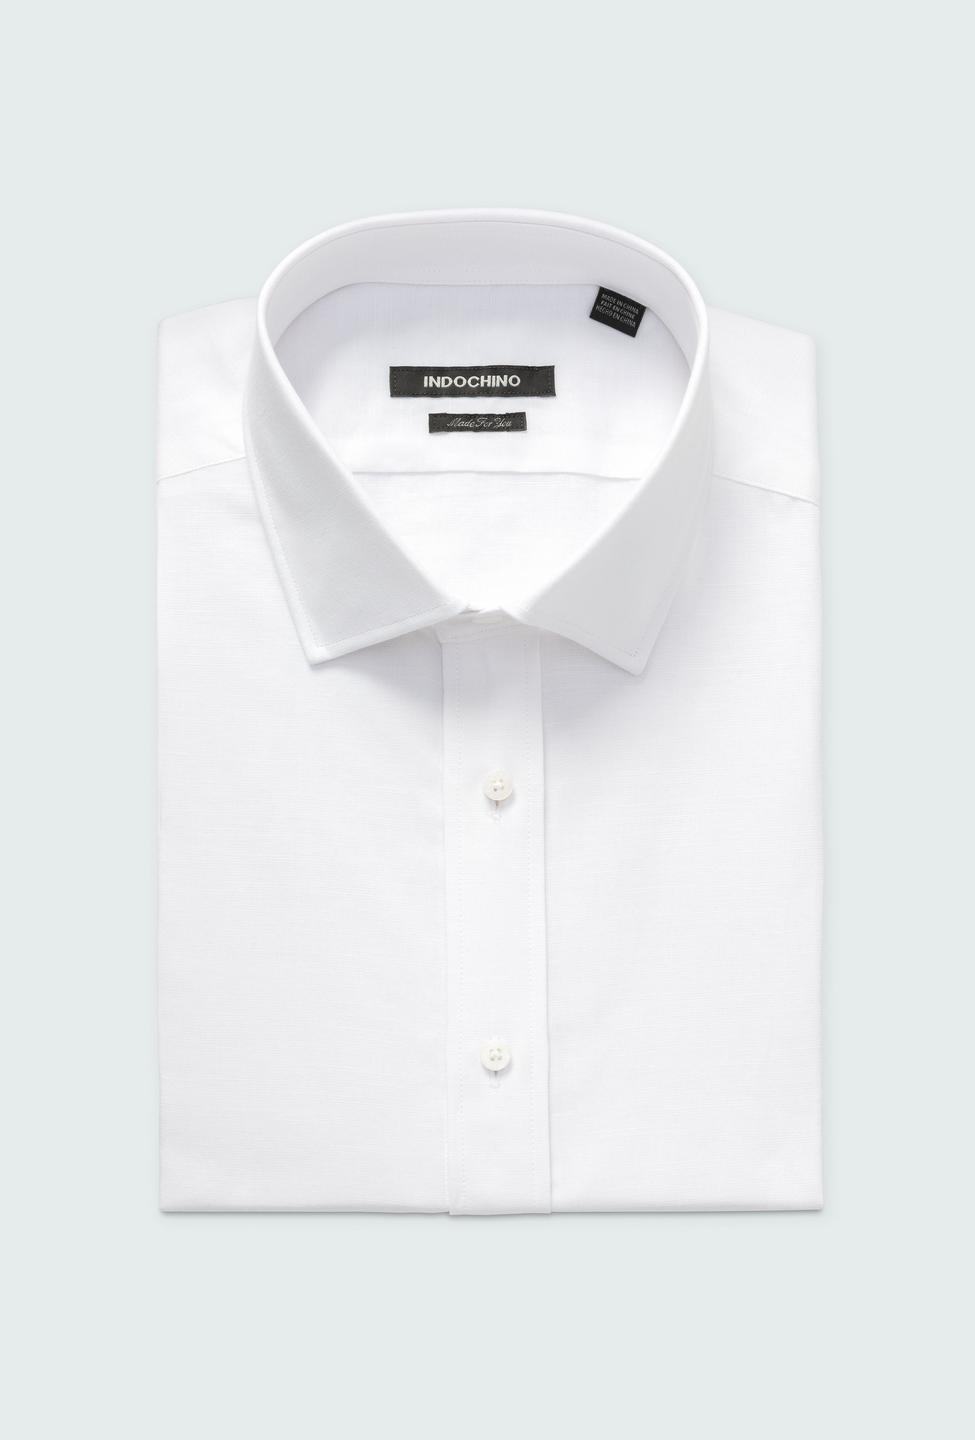 Sudbury Cotton Linen White Shirt